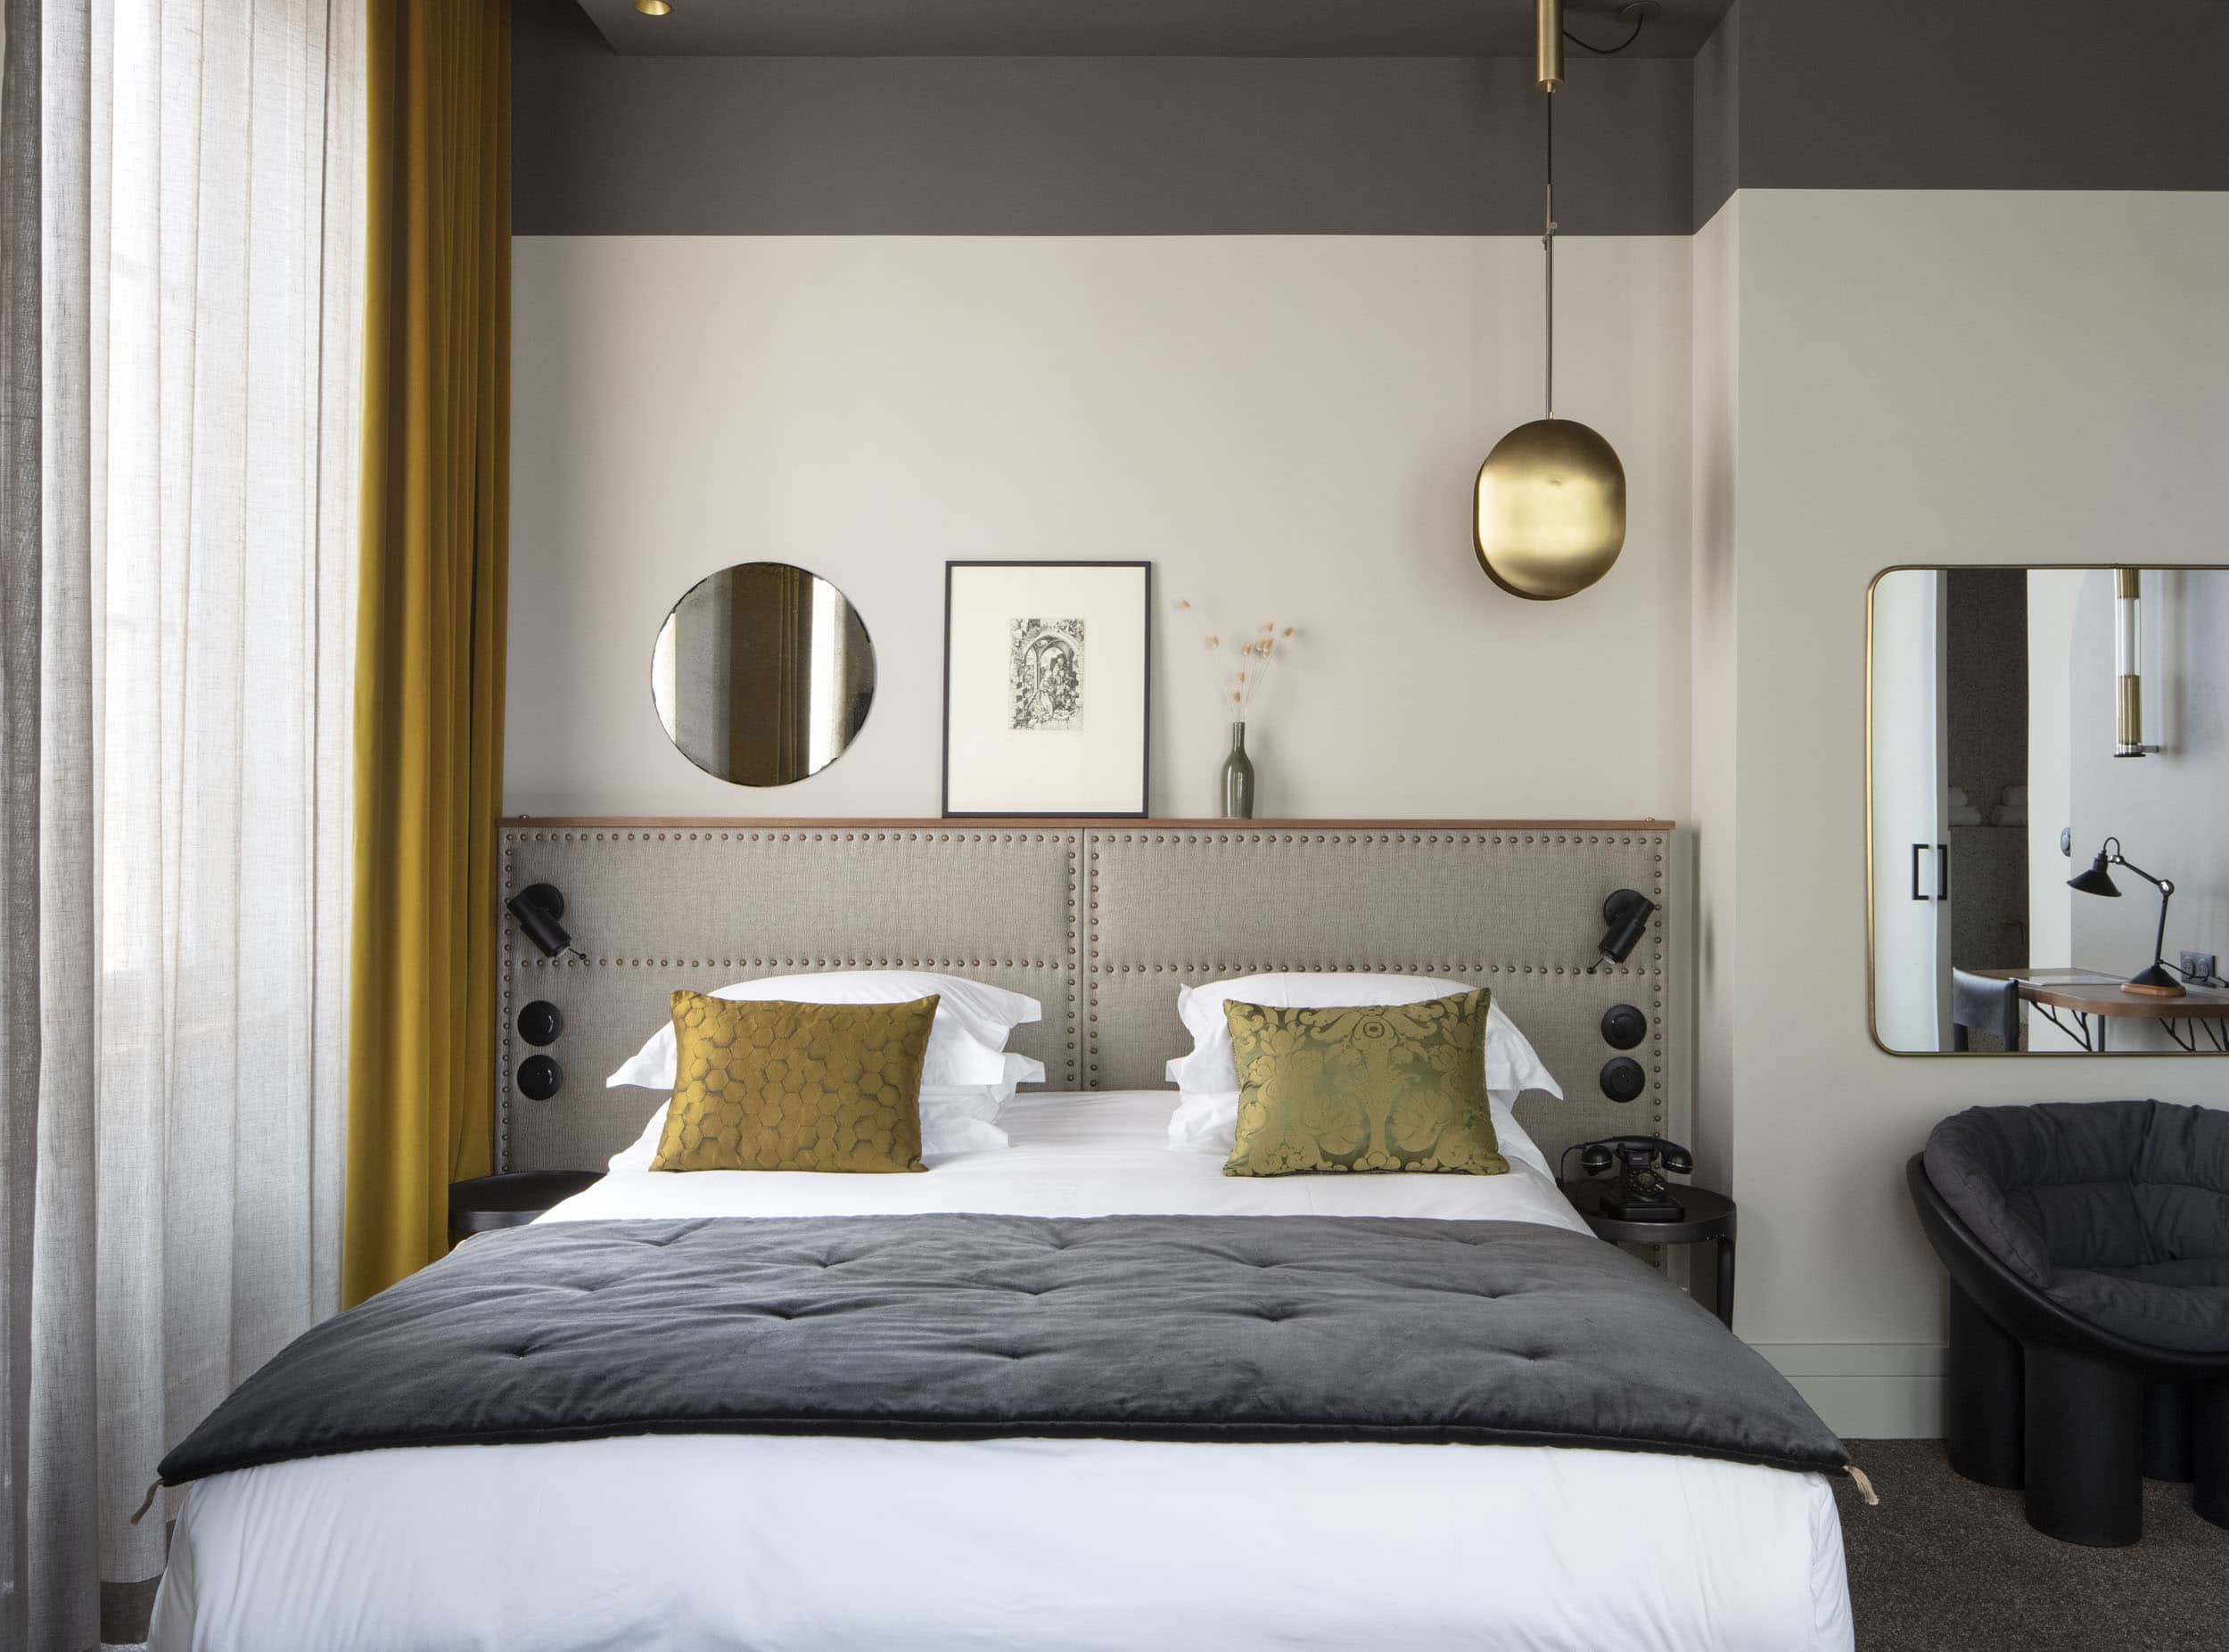 Entdecken Sie unsere eleganten Zimmer mit allem Komfort, die von Designern eingerichtet wurden.